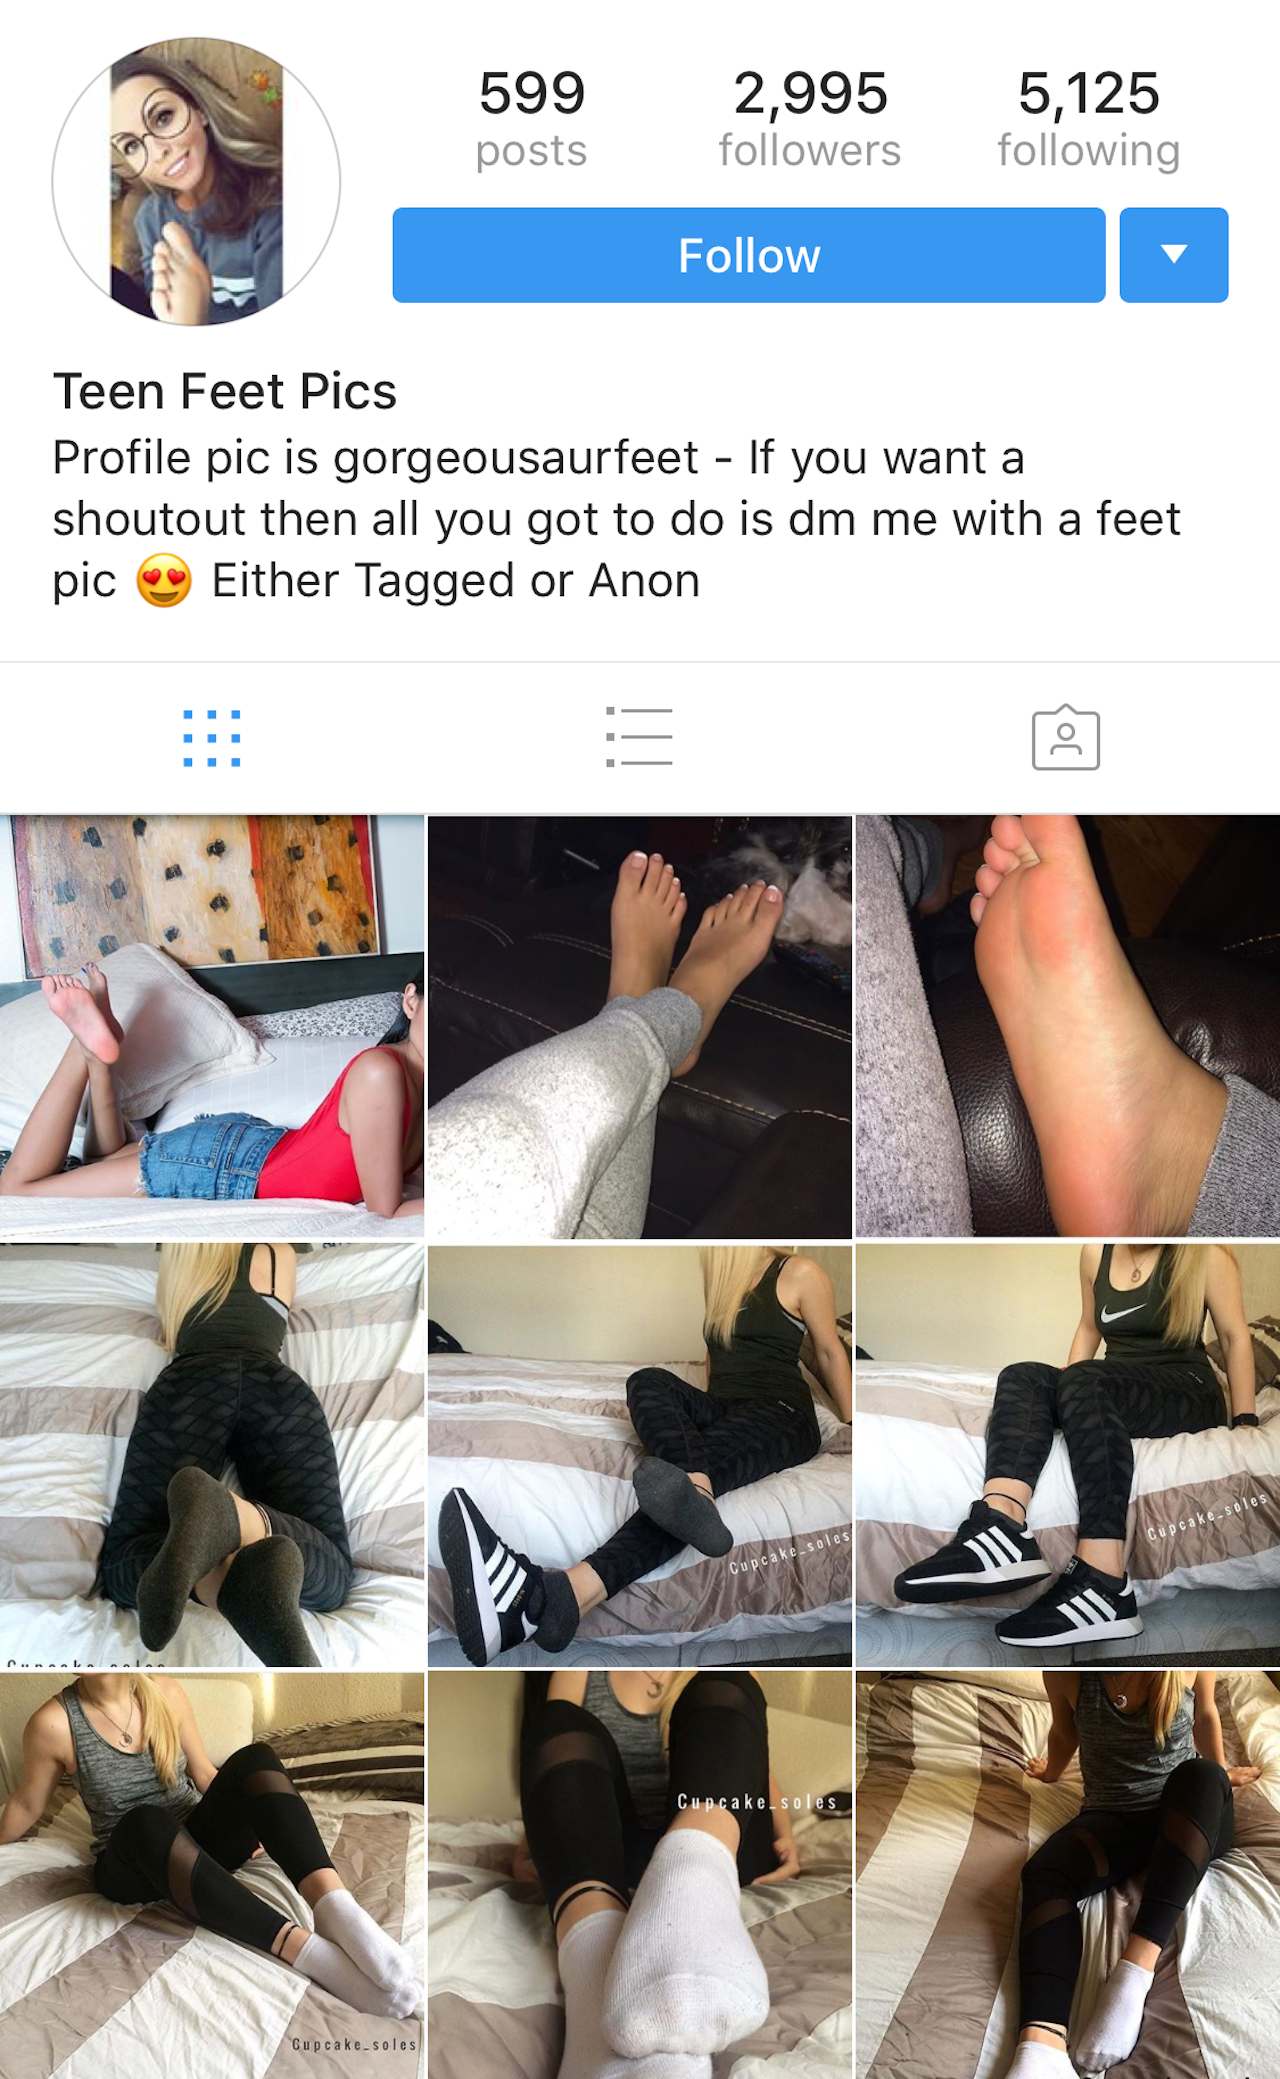 Celebrity Footjob Caption - Inside Instagram's foot fetish community | The Outline